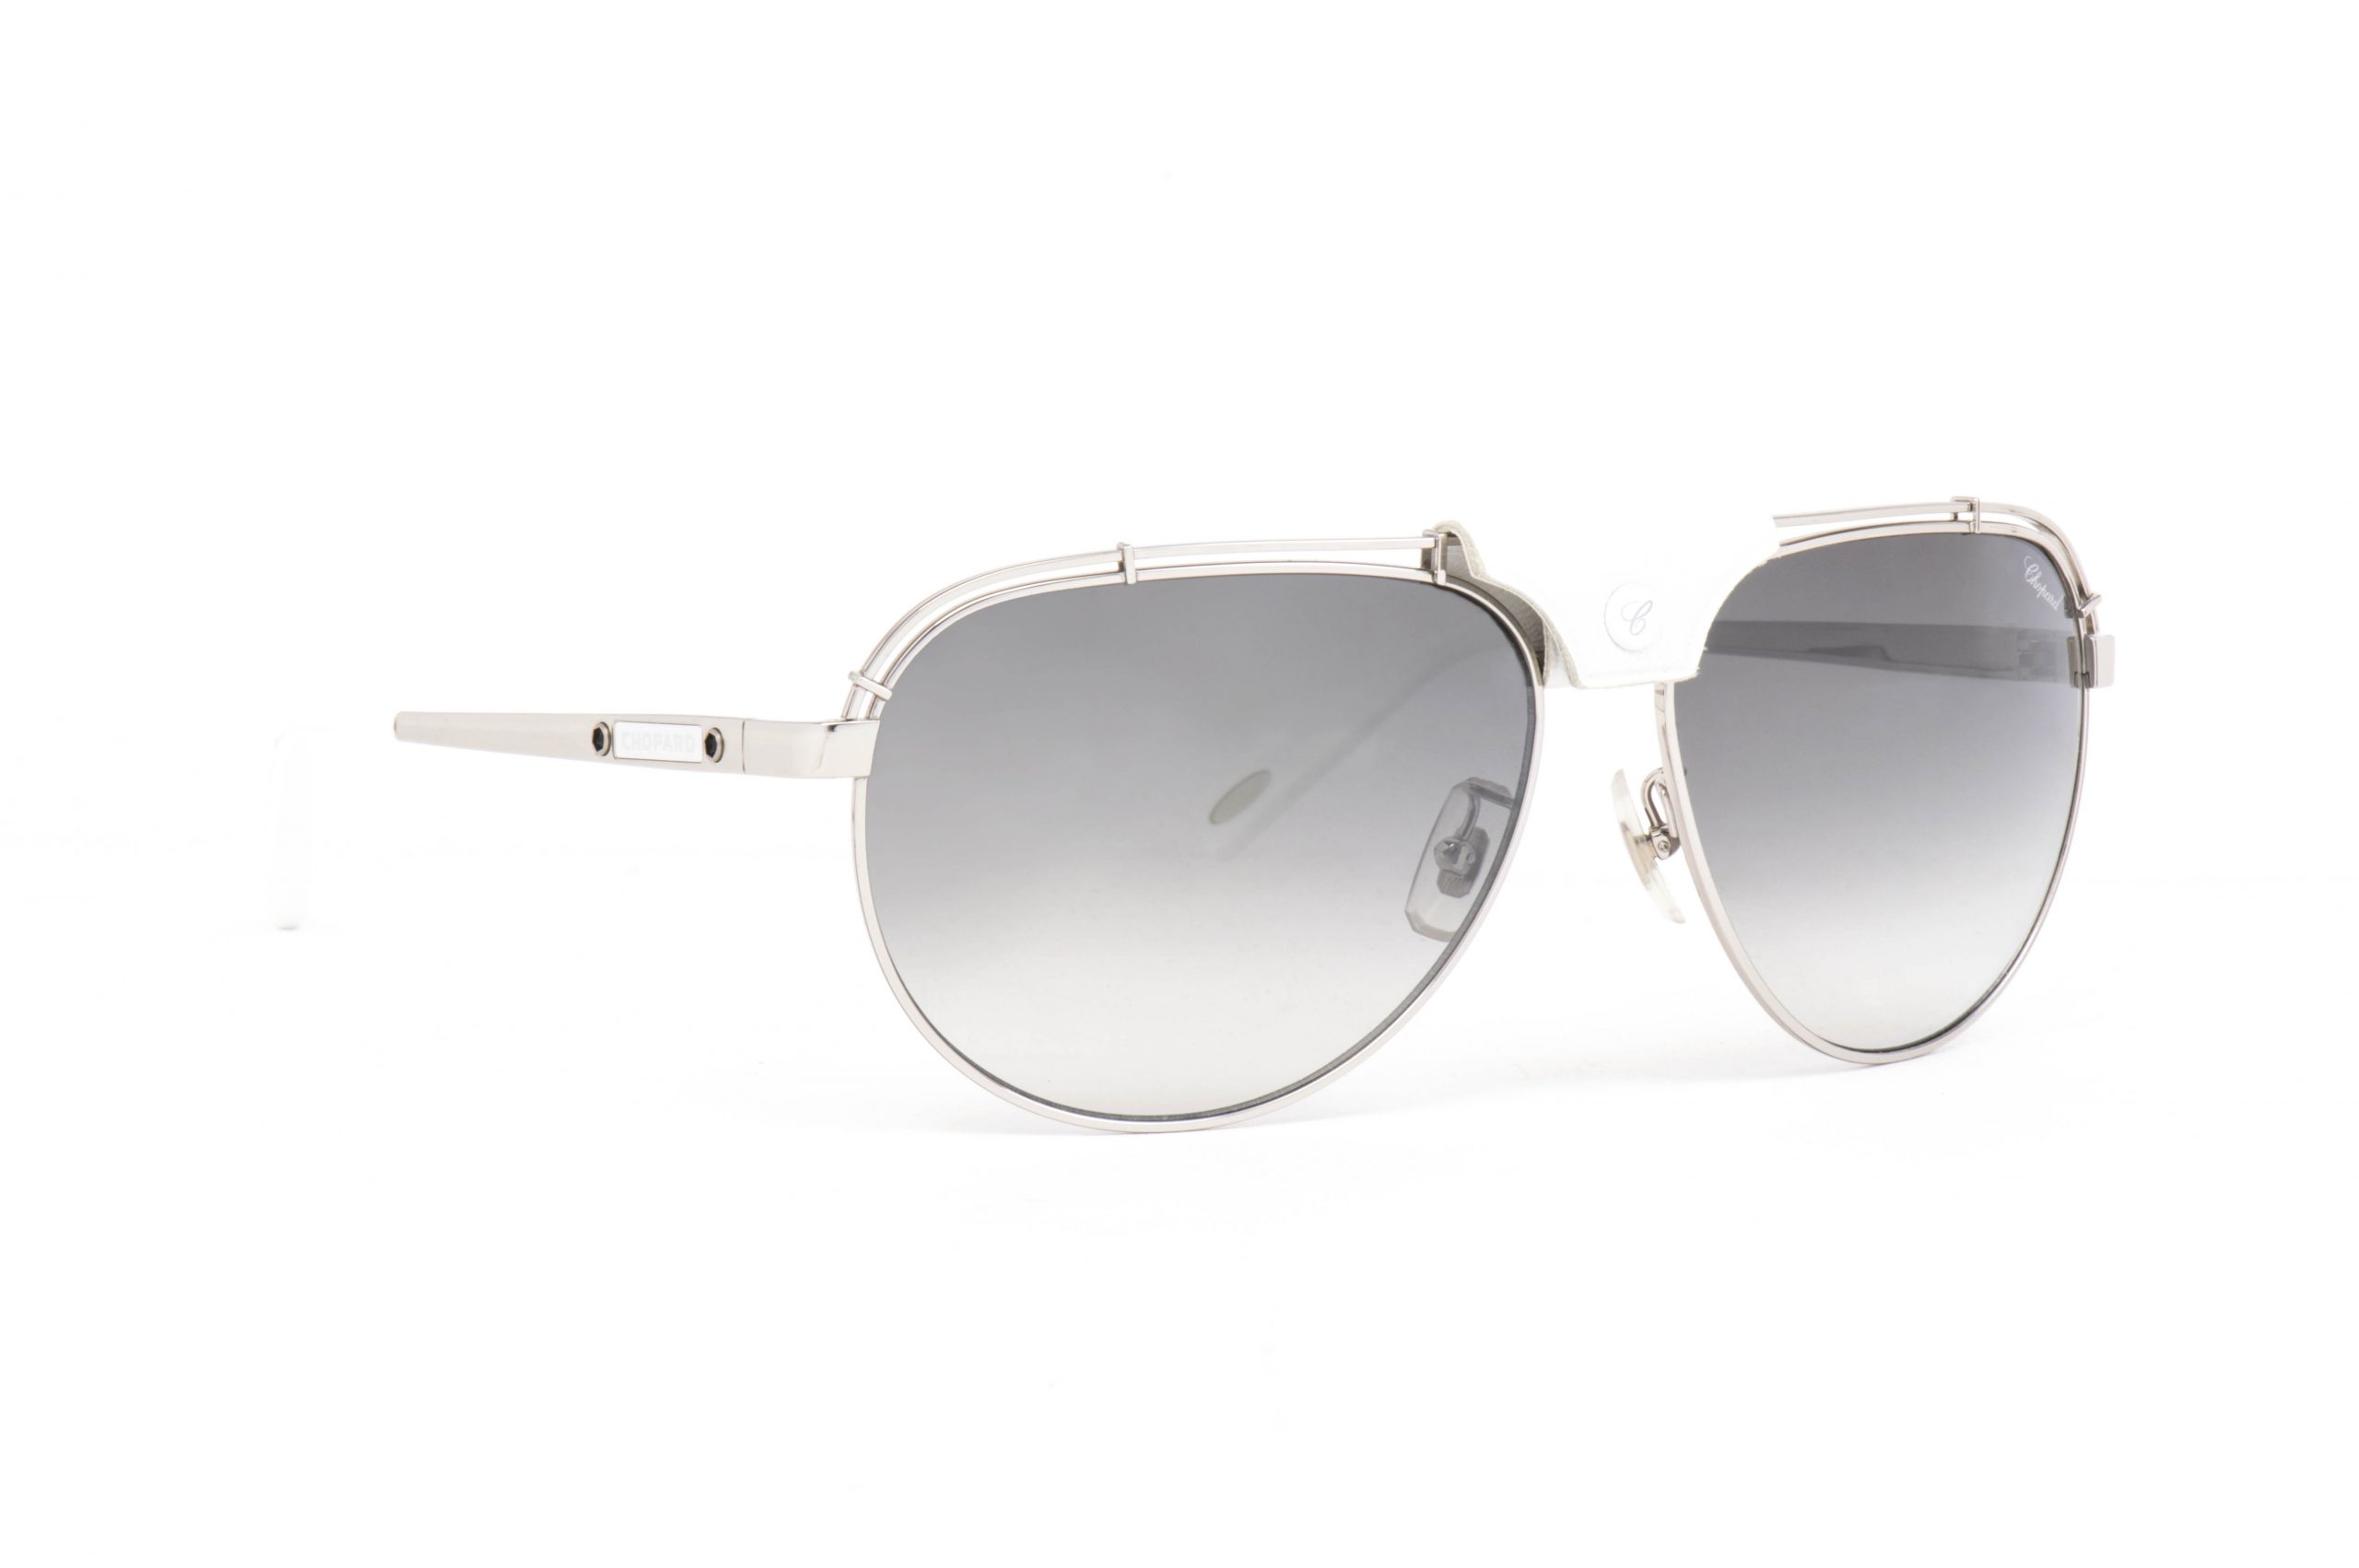 CHOPARD Sunglasses SCH A12 579X | عالم النظارات السعودية